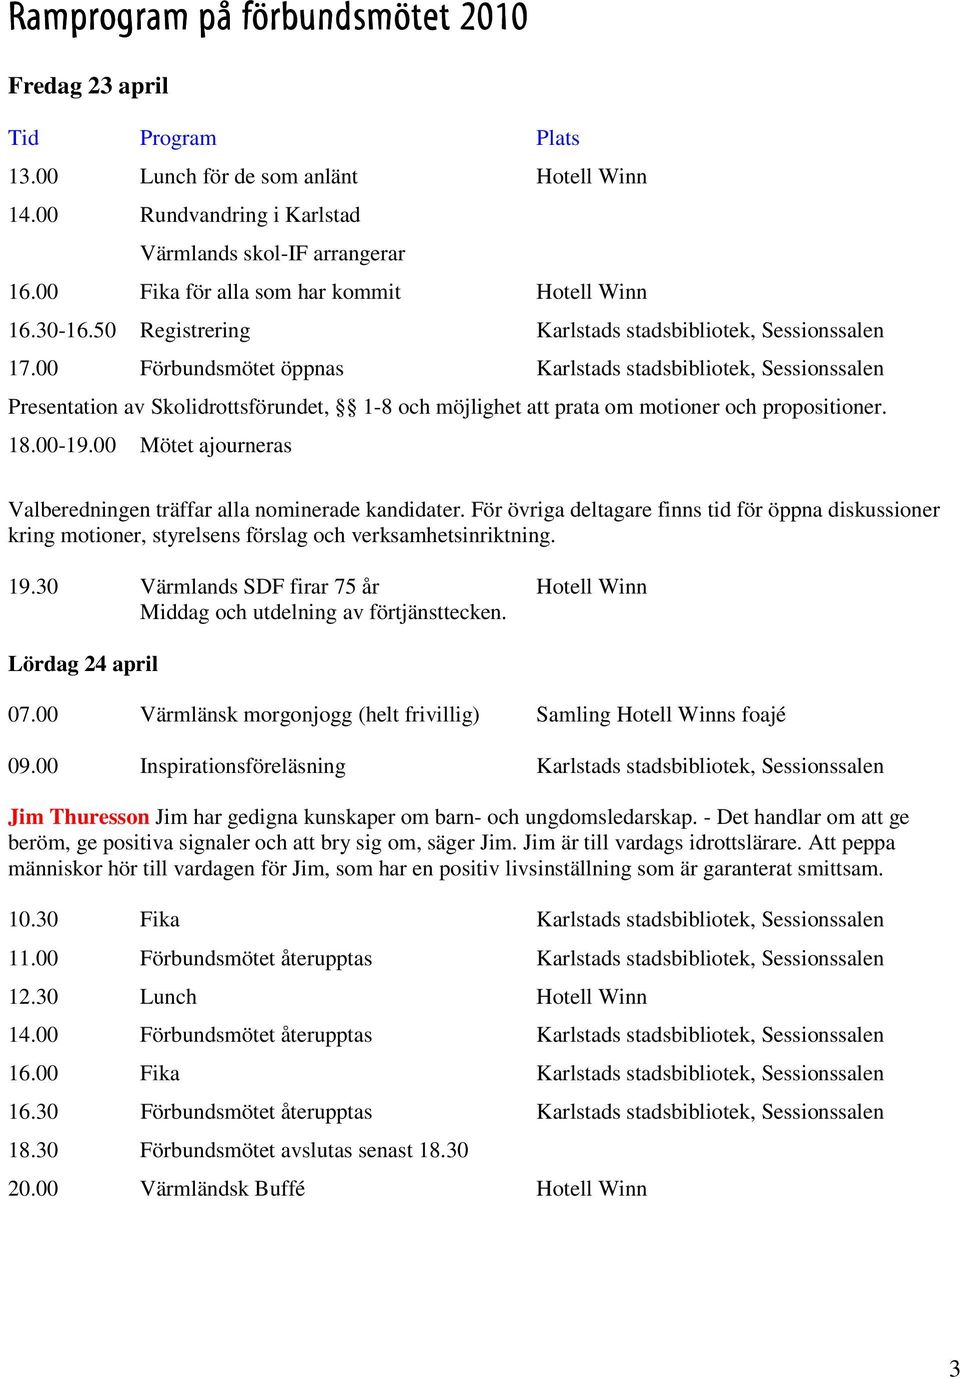 00 Förbundsmötet öppnas Karlstads stadsbibliotek, Sessionssalen Presentation av Skolidrottsförundet, 1-8 och möjlighet att prata om motioner och propositioner. 18.00-19.